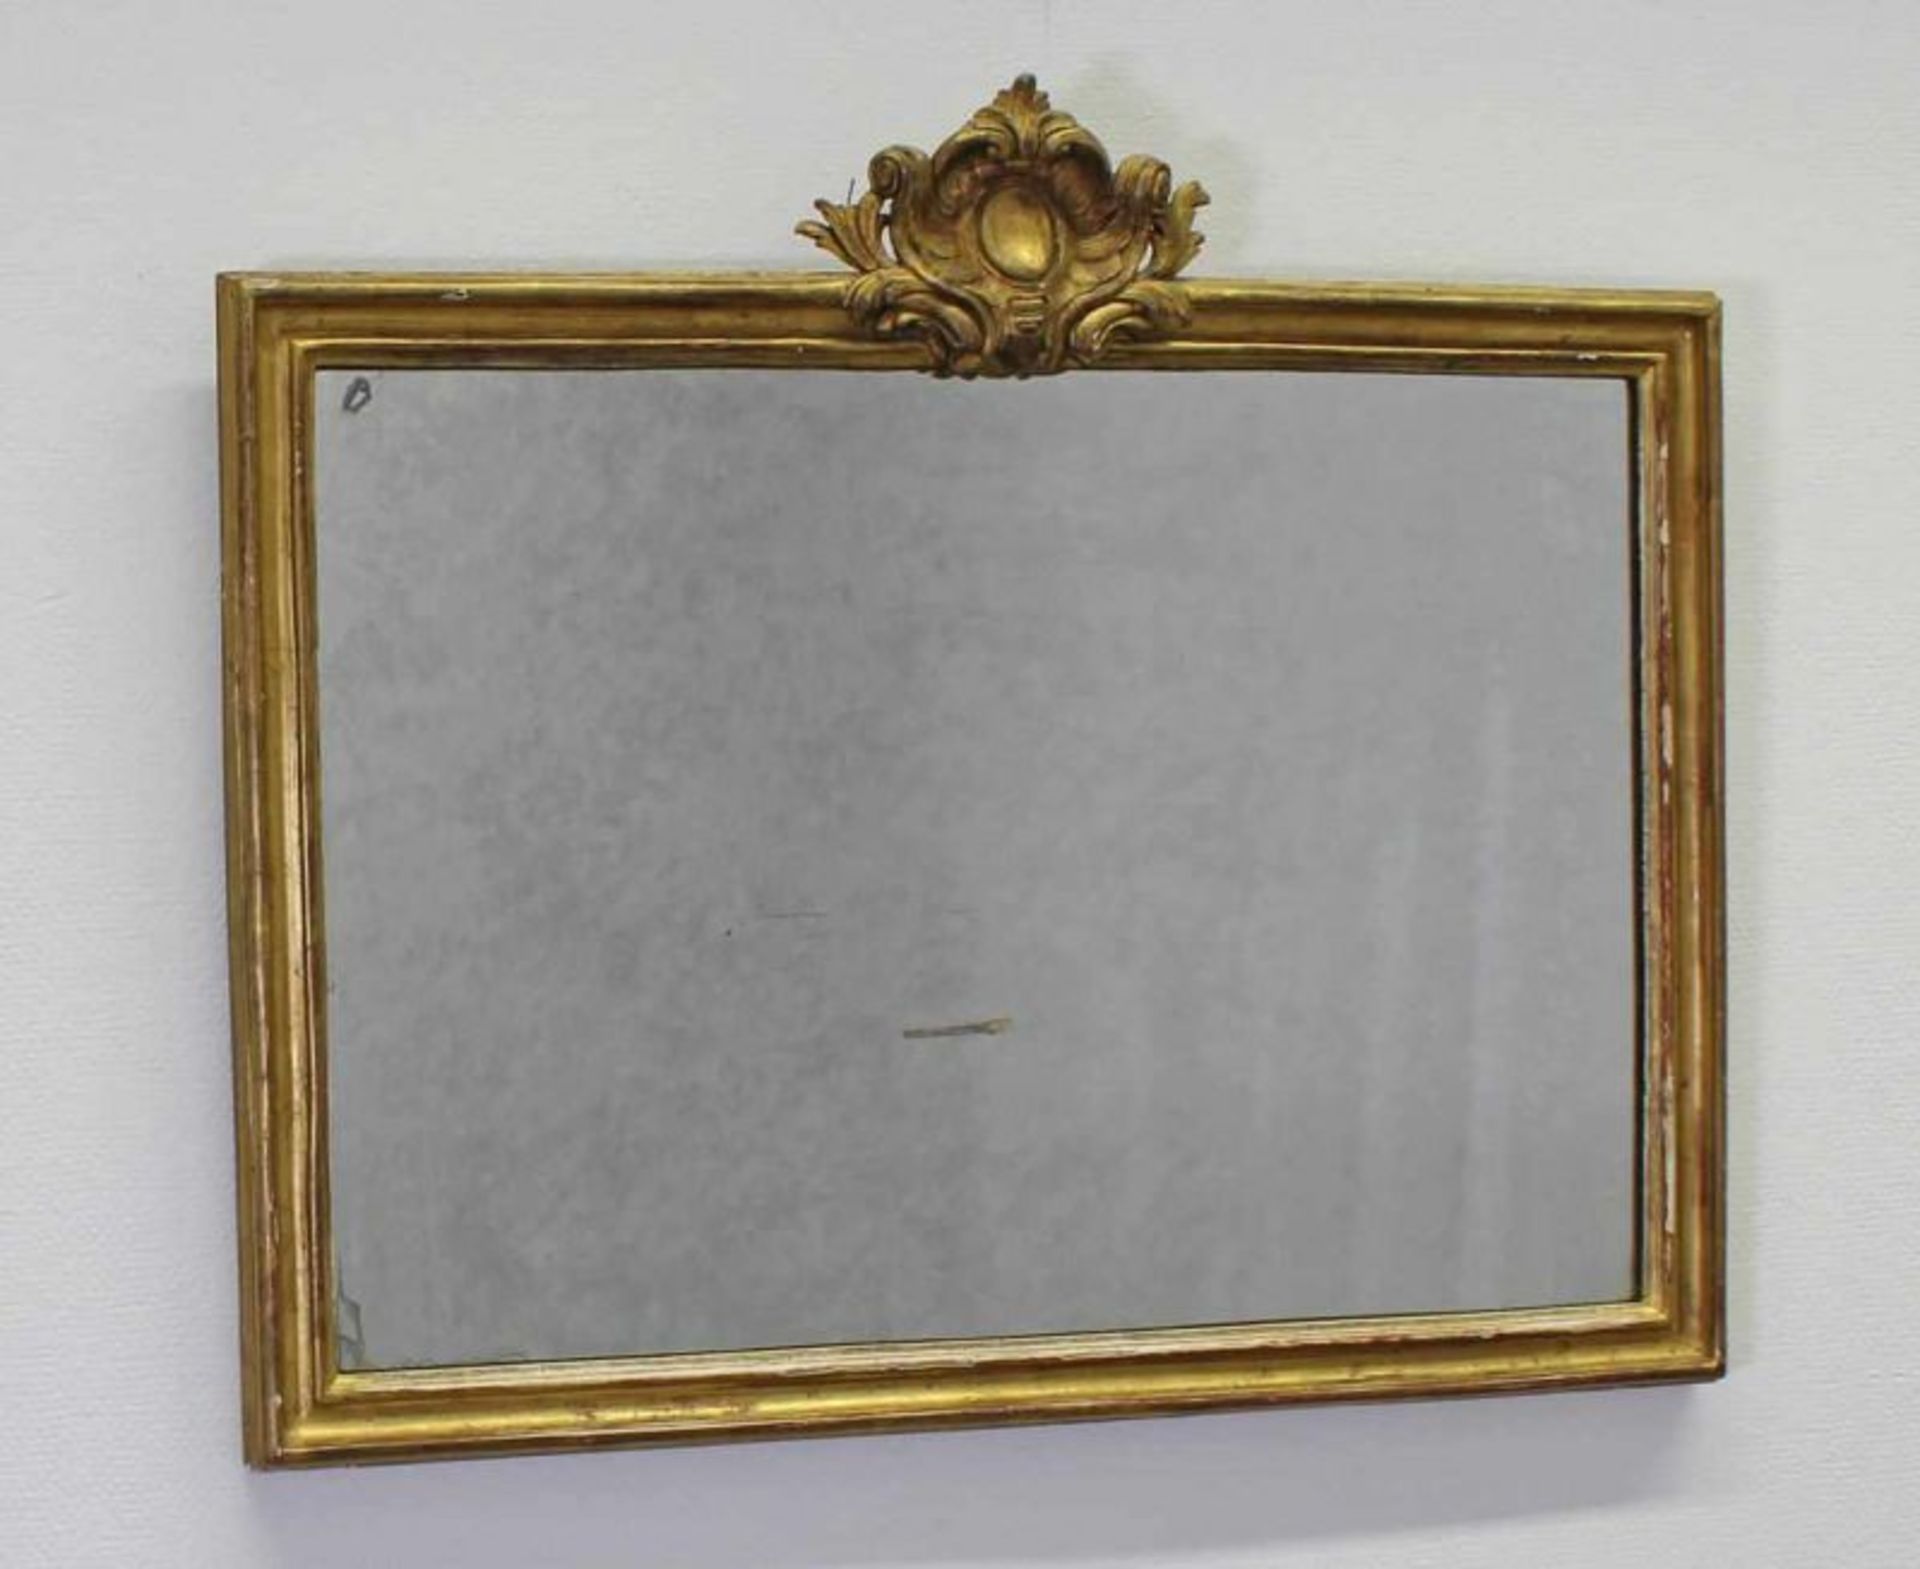 Paar Spiegel, Ende 18. Jh., Holz, gold gefasst, bekrönend geschnitzte Rocaille, je 67 x 78 cm,